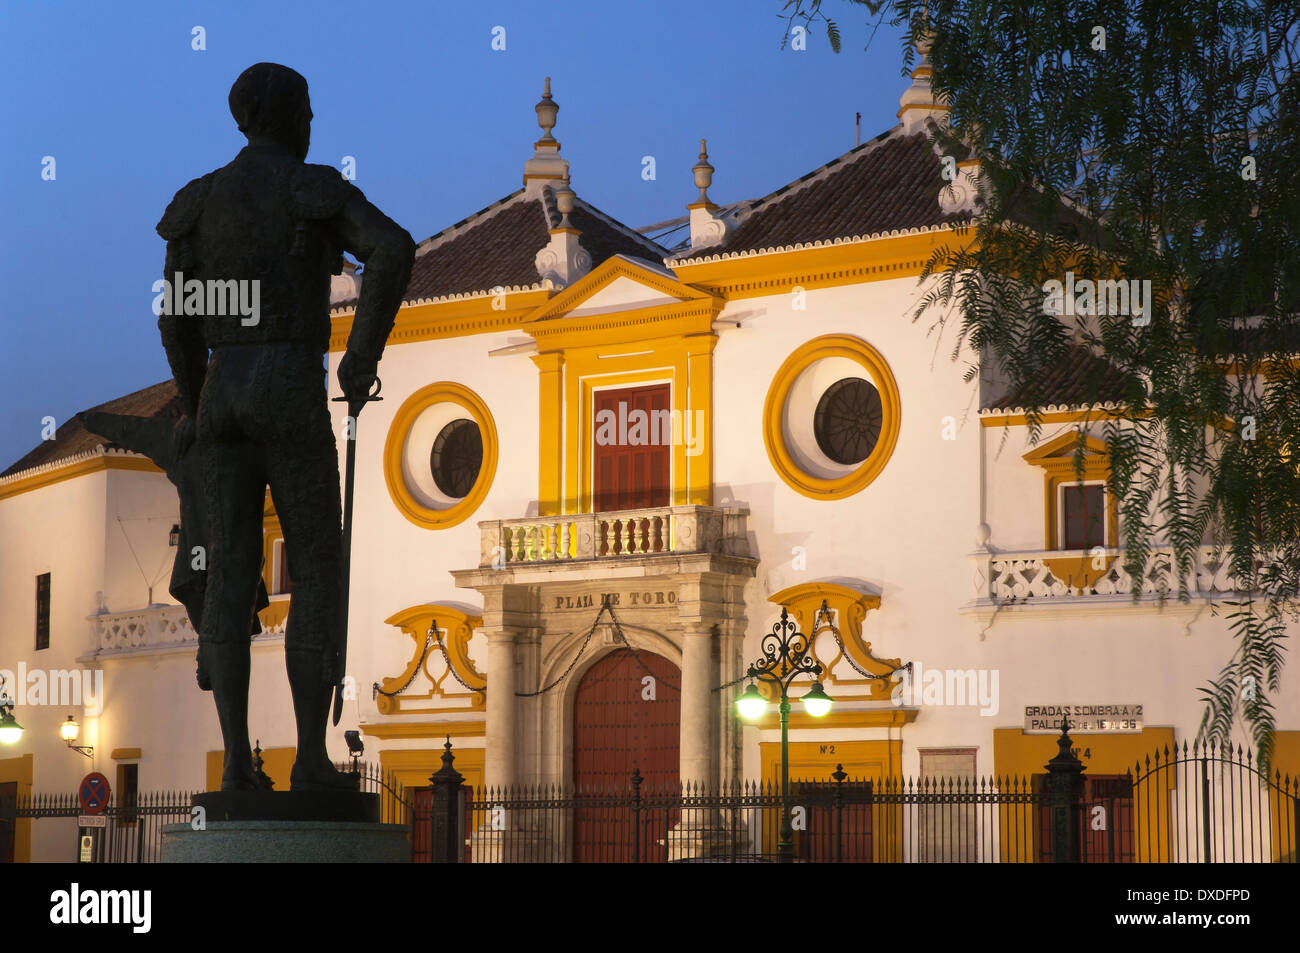 La maestranza bullring e statua del torero pepe Luis Vazquez, Siviglia, regione dell'Andalusia, Spagna, Europa Foto Stock